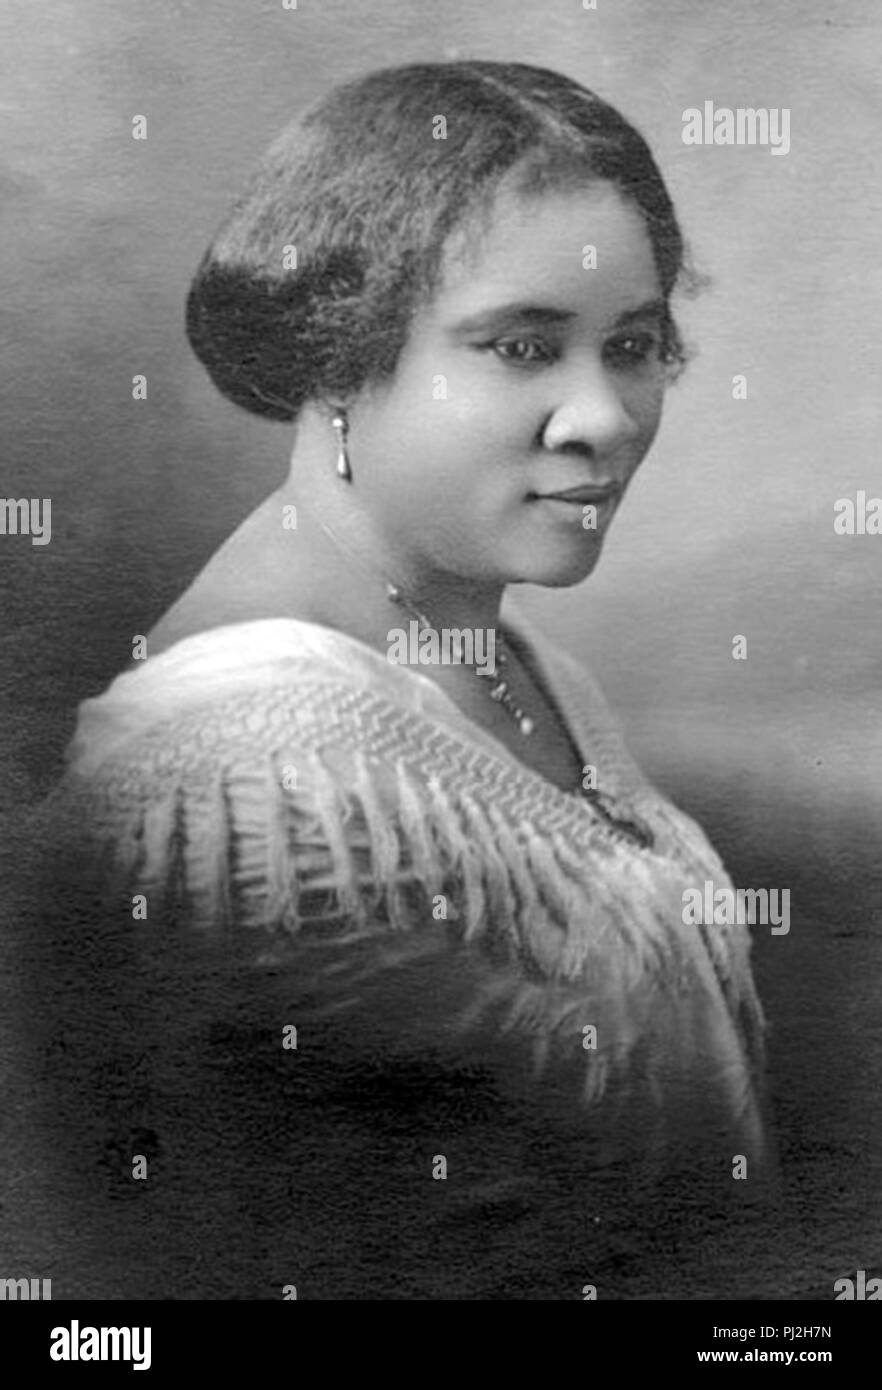 Madame C.J. Walker, la première femme américaine self-made millionaire de n'importe quelle race, Sarah Breedlove (1867 - 1919), connu sous le nom de Madame C. J. Walker, entrepreneur d'origine afro-américaine et la première femme self-made millionnaire dans l'United States Banque D'Images